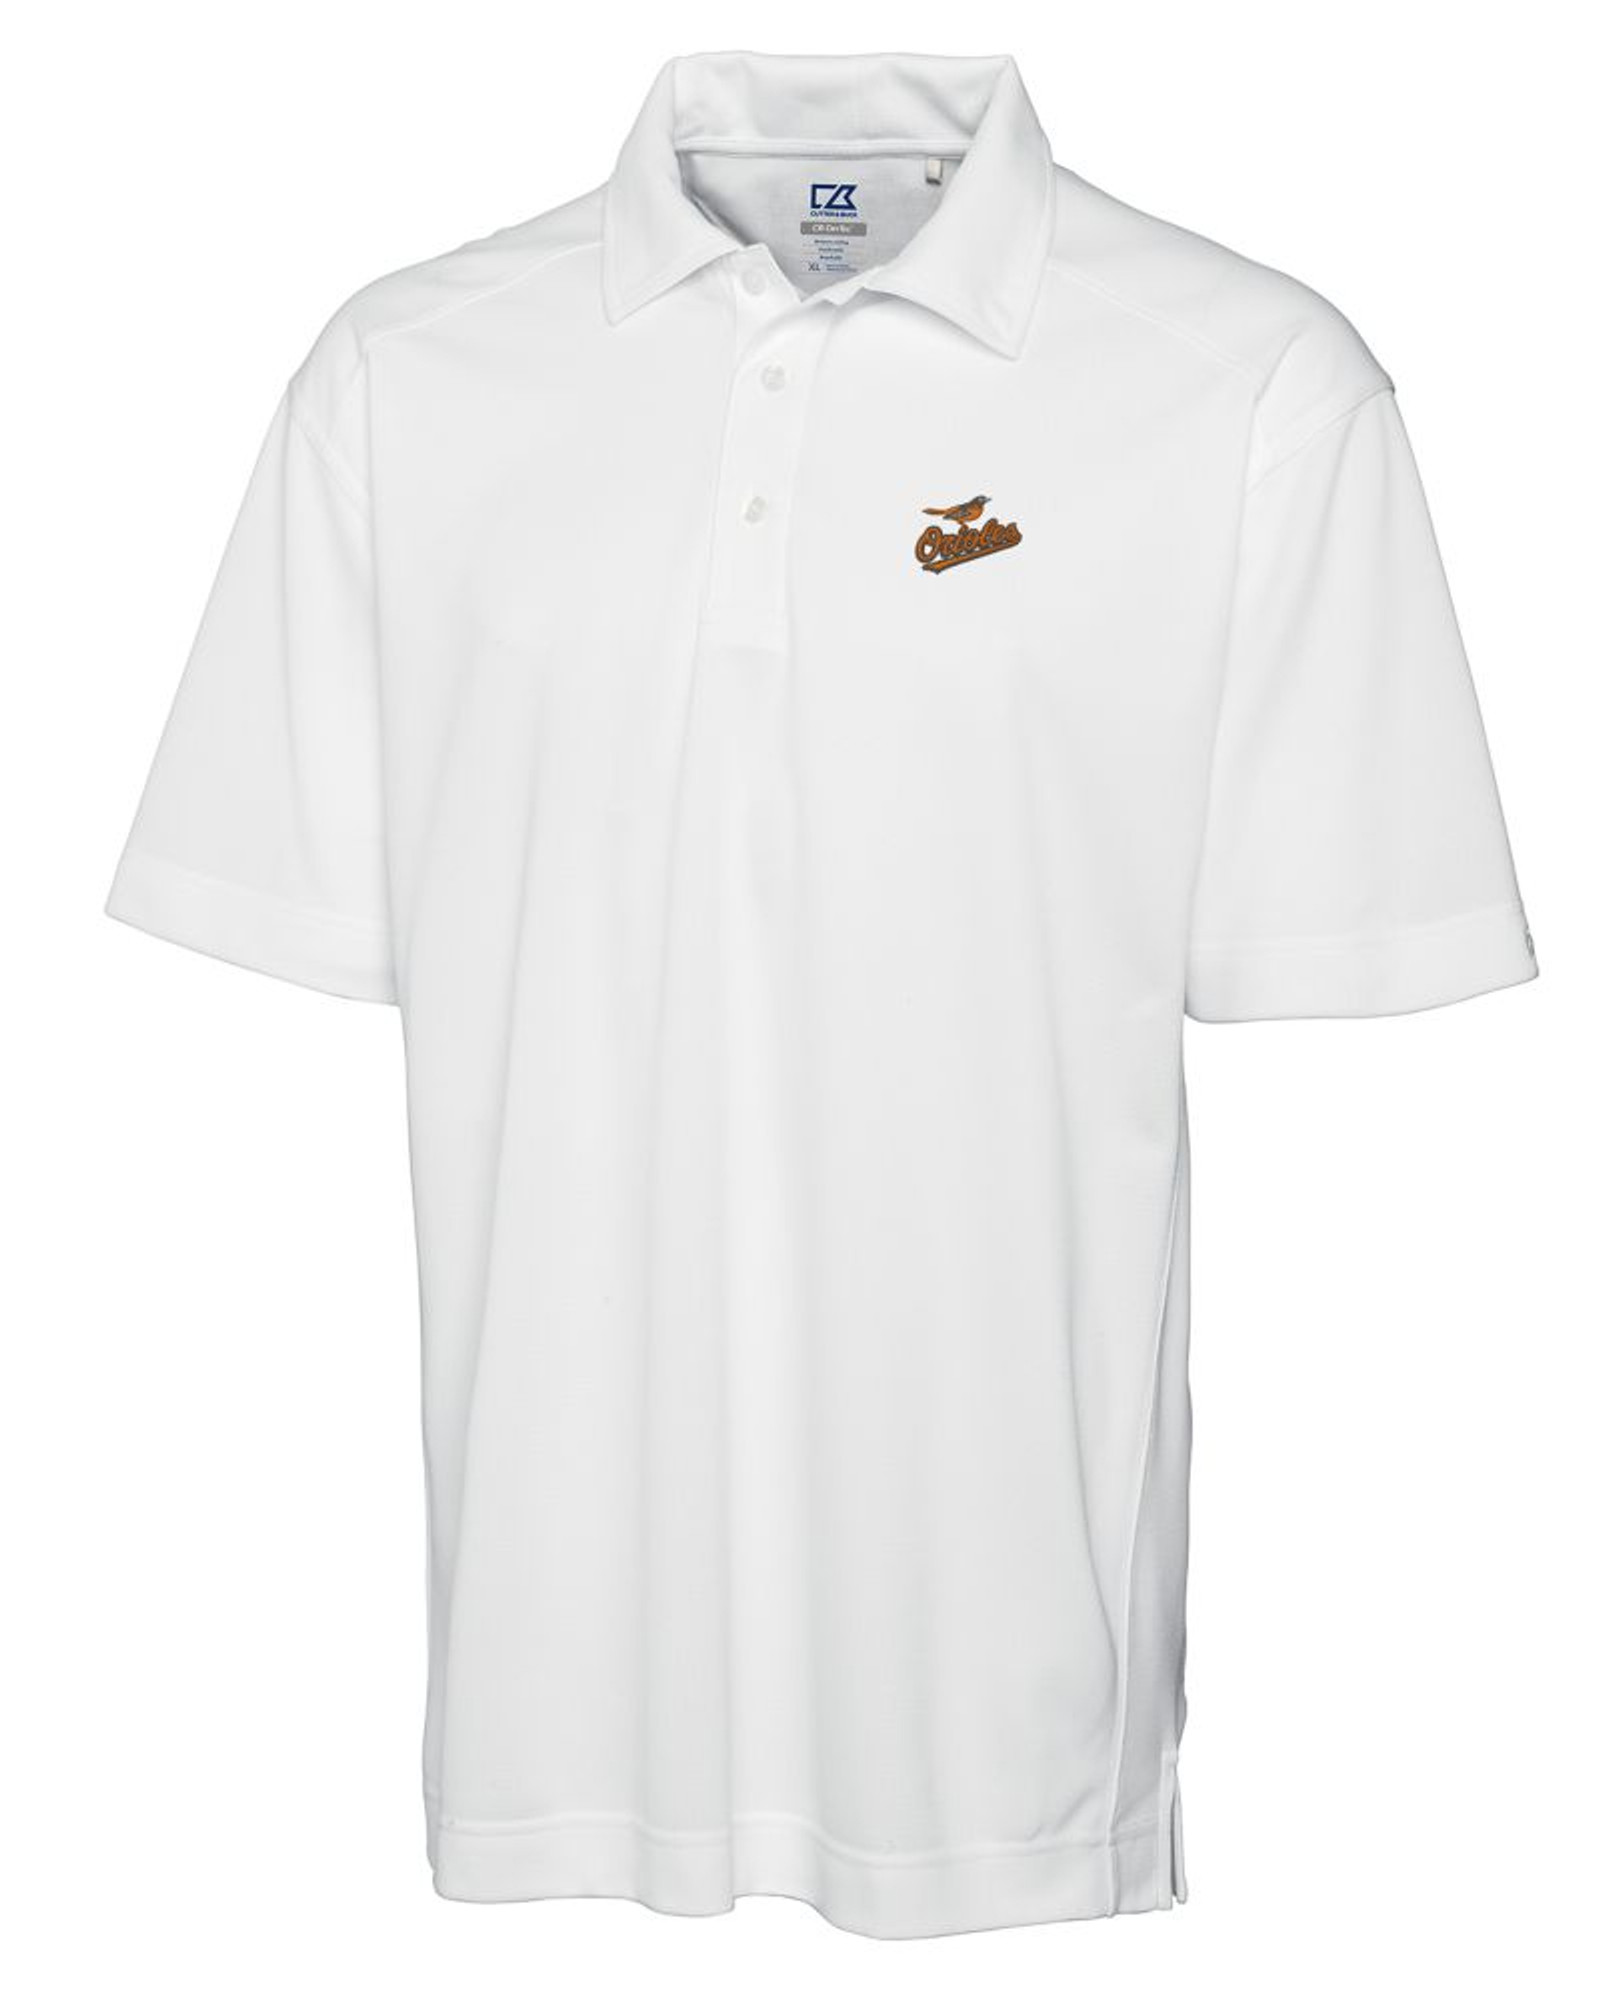 Baltimore Orioles Polo, Orioles Polos, Golf Shirts